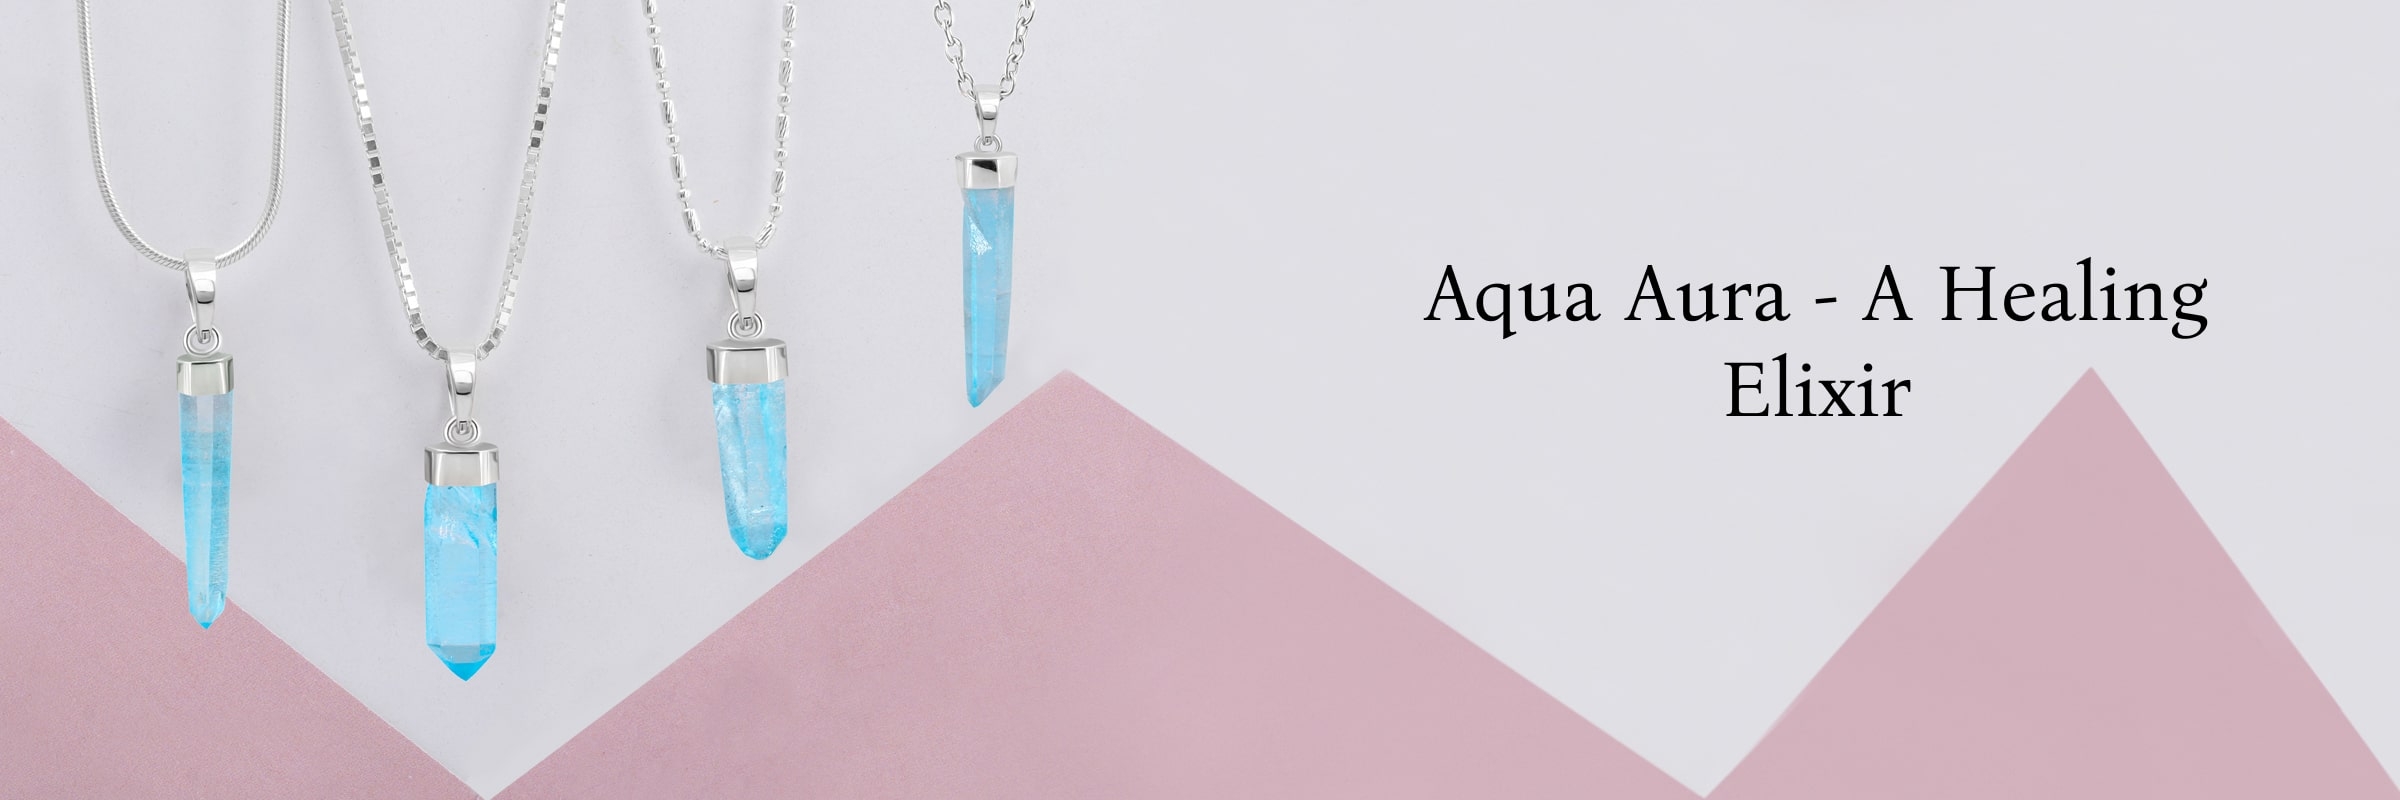 Aqua Aura Healing Properties